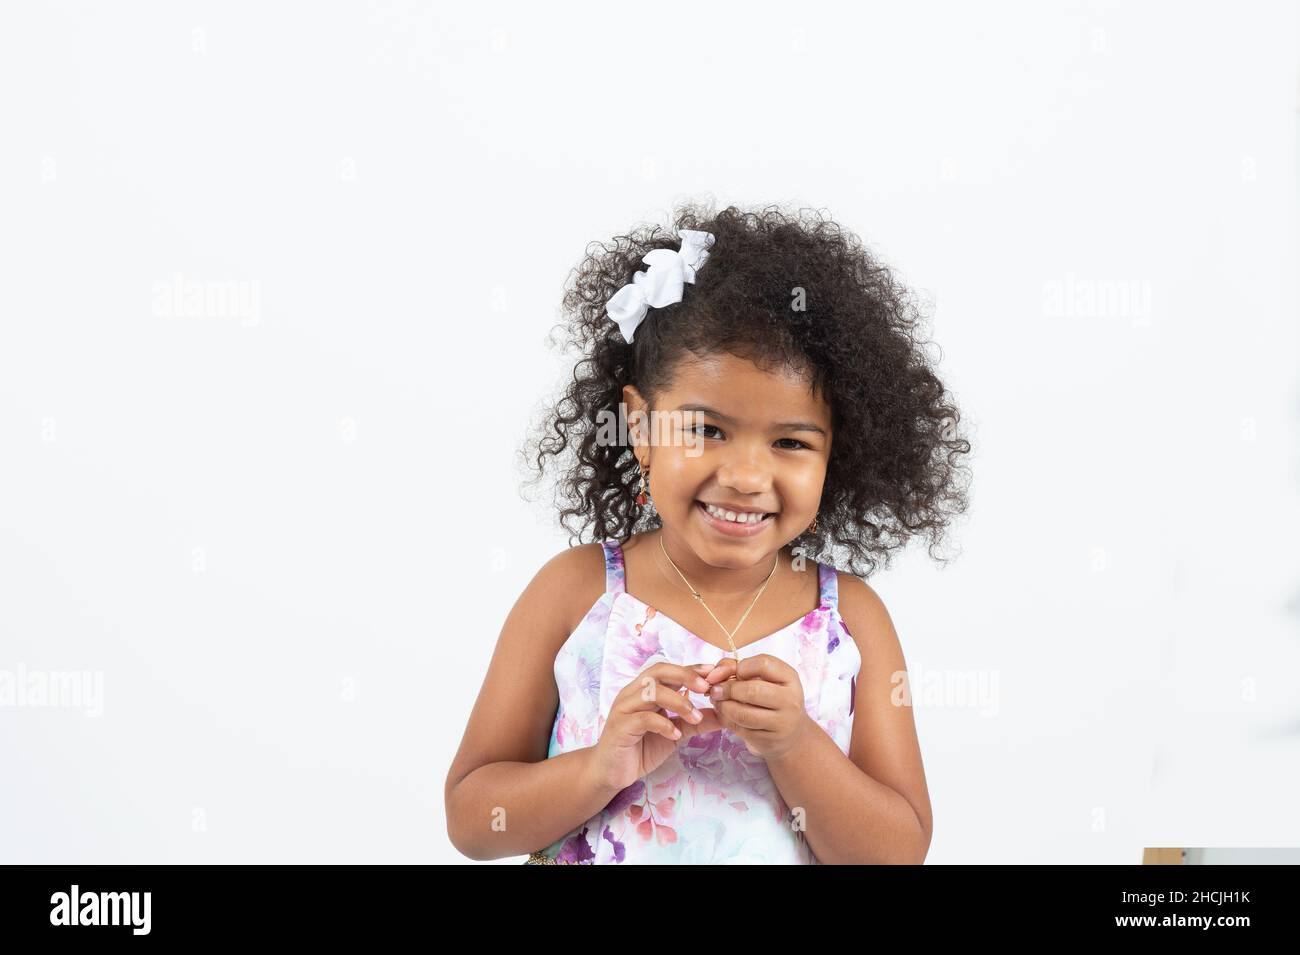 Primer plano retrato de una niña de 4 o 5 años, sonriente, fondo blanco Foto de stock